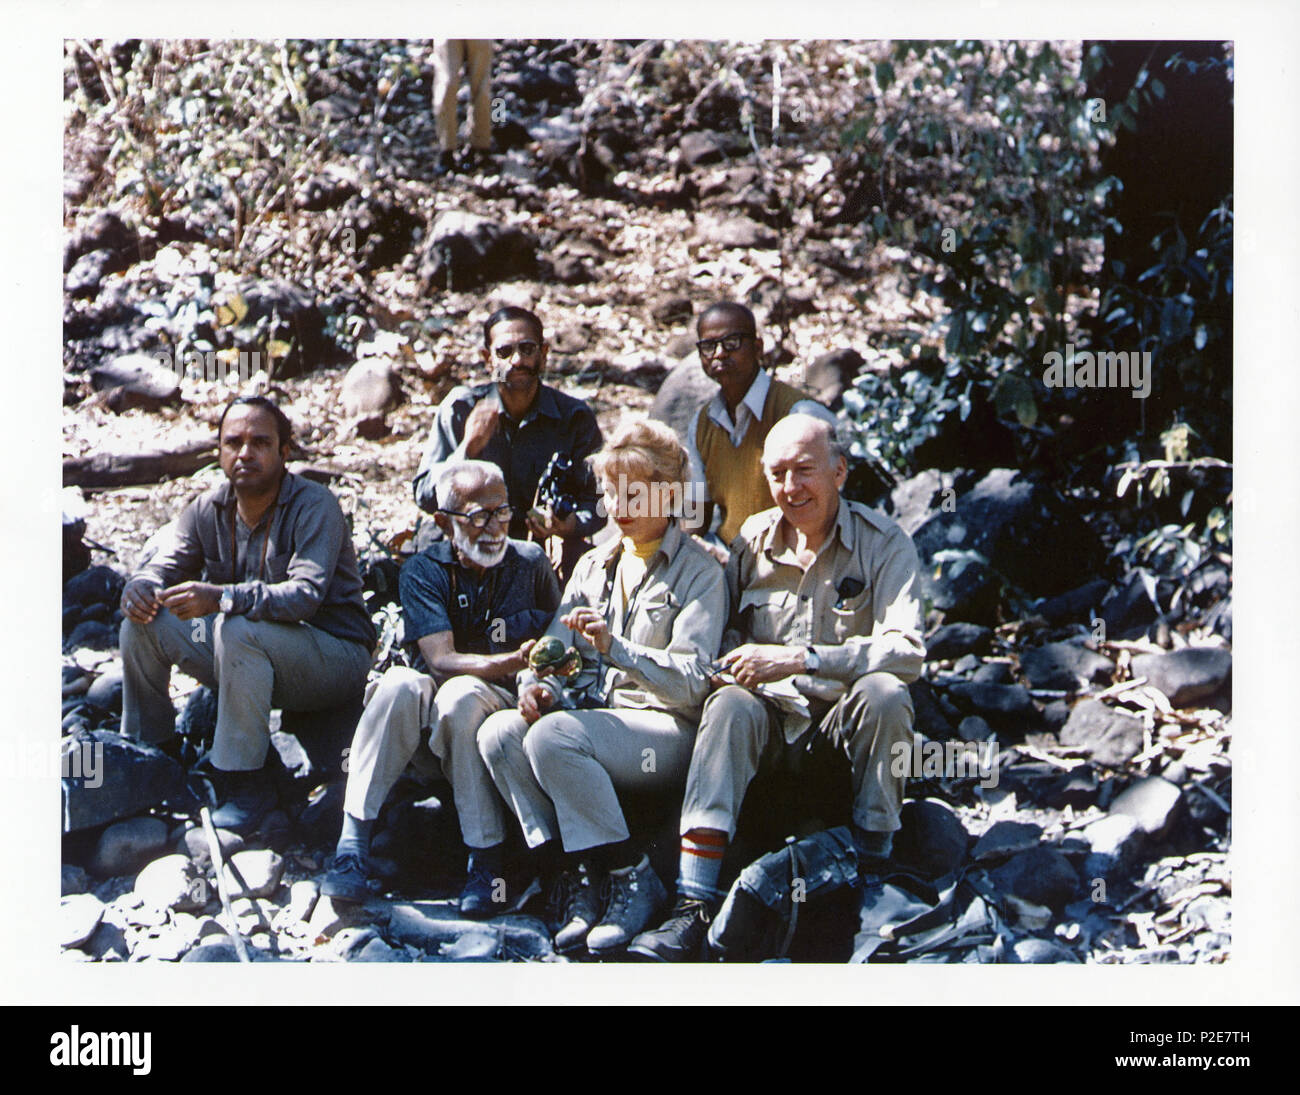 . En 1976 S. Dillon Ripley (1913-2001), ornithologue et huitième Smithsonian Secrétaire a fait un voyage en Inde afin de mener des recherches avec Salim Ali pour leur Guide des oiseaux de l'Inde et le Pakistan. De gauche à droite en première rangée : une personne non identifiée, Salim Ali (1896-1987), Ripley's épouse Mary Livingston Ripley (d. 1996), et Ripley s'asseoir sur une colline en Inde. De gauche à droite dans la rangée arrière : un homme tenant des jumelles, et M. P.B. Shekar, un spécialiste des collections de temps la Bombay Natural History Society, et un camp régulier membre de M. Ripley's expeditions en Inde. M. Ali est holding Banque D'Images